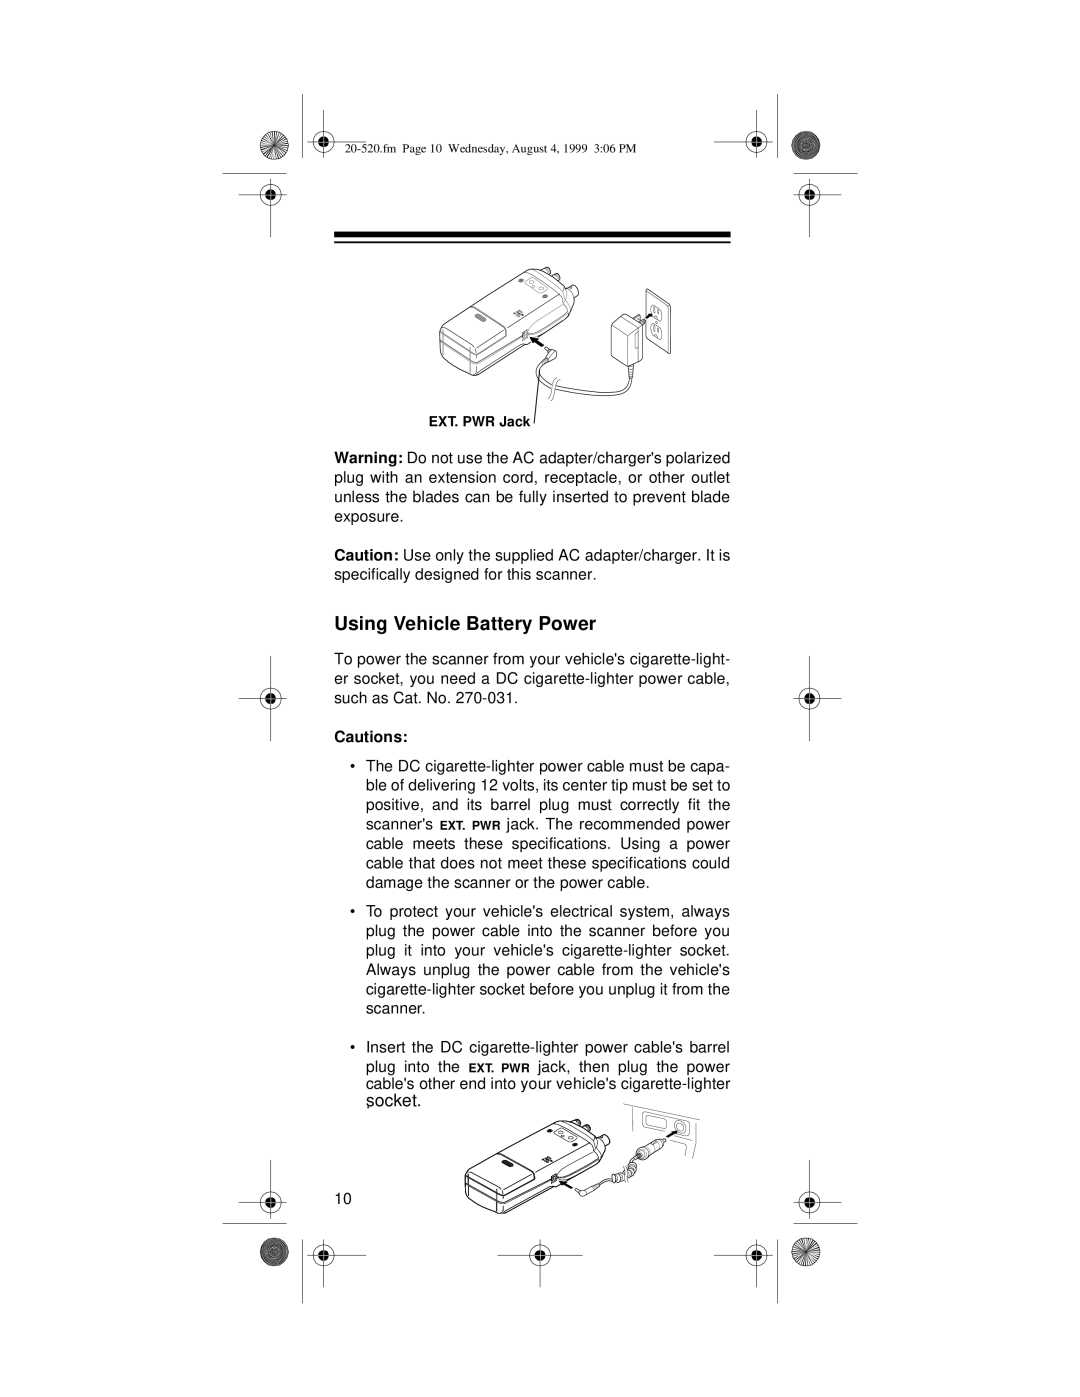 Radio Shack PRO-90 owner manual Using Vehicle Battery Power, socket 